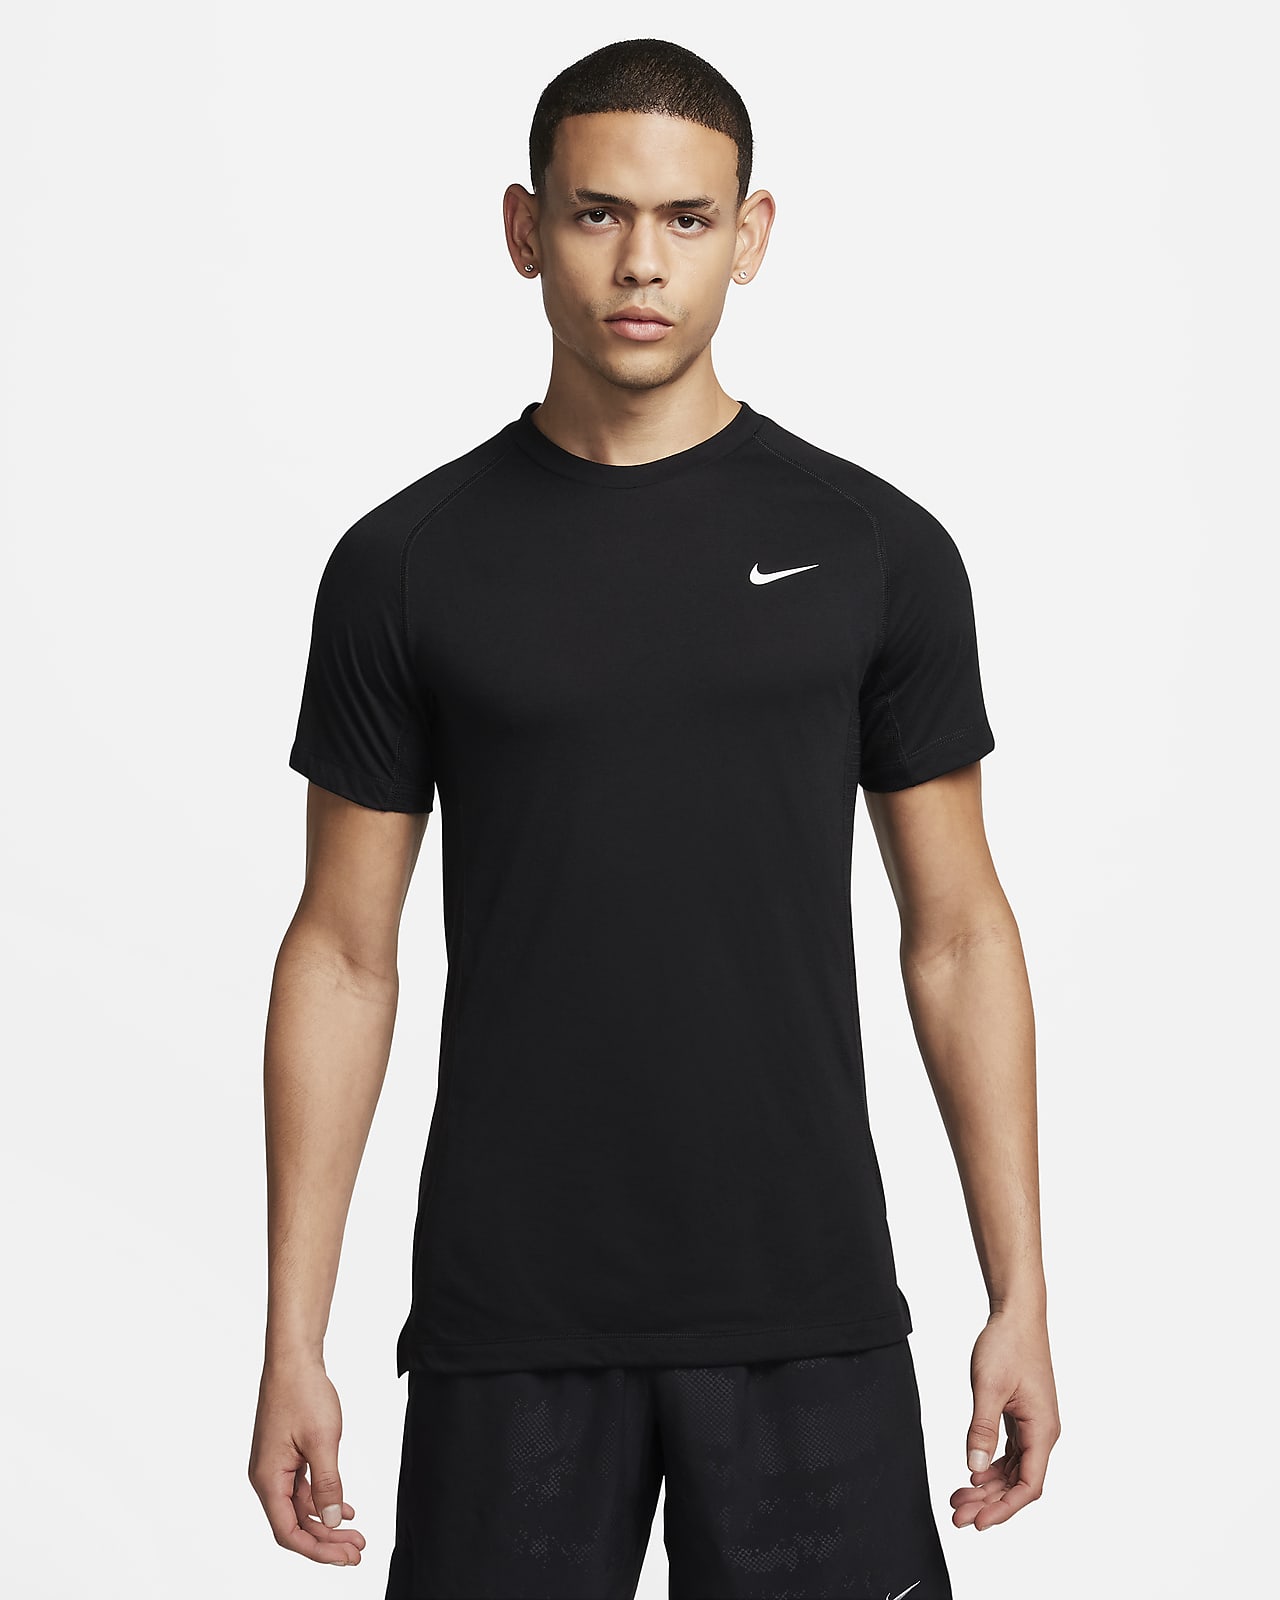 Ανδρική κοντομάνικη μπλούζα fitness Dri-FIT Nike Flex Rep